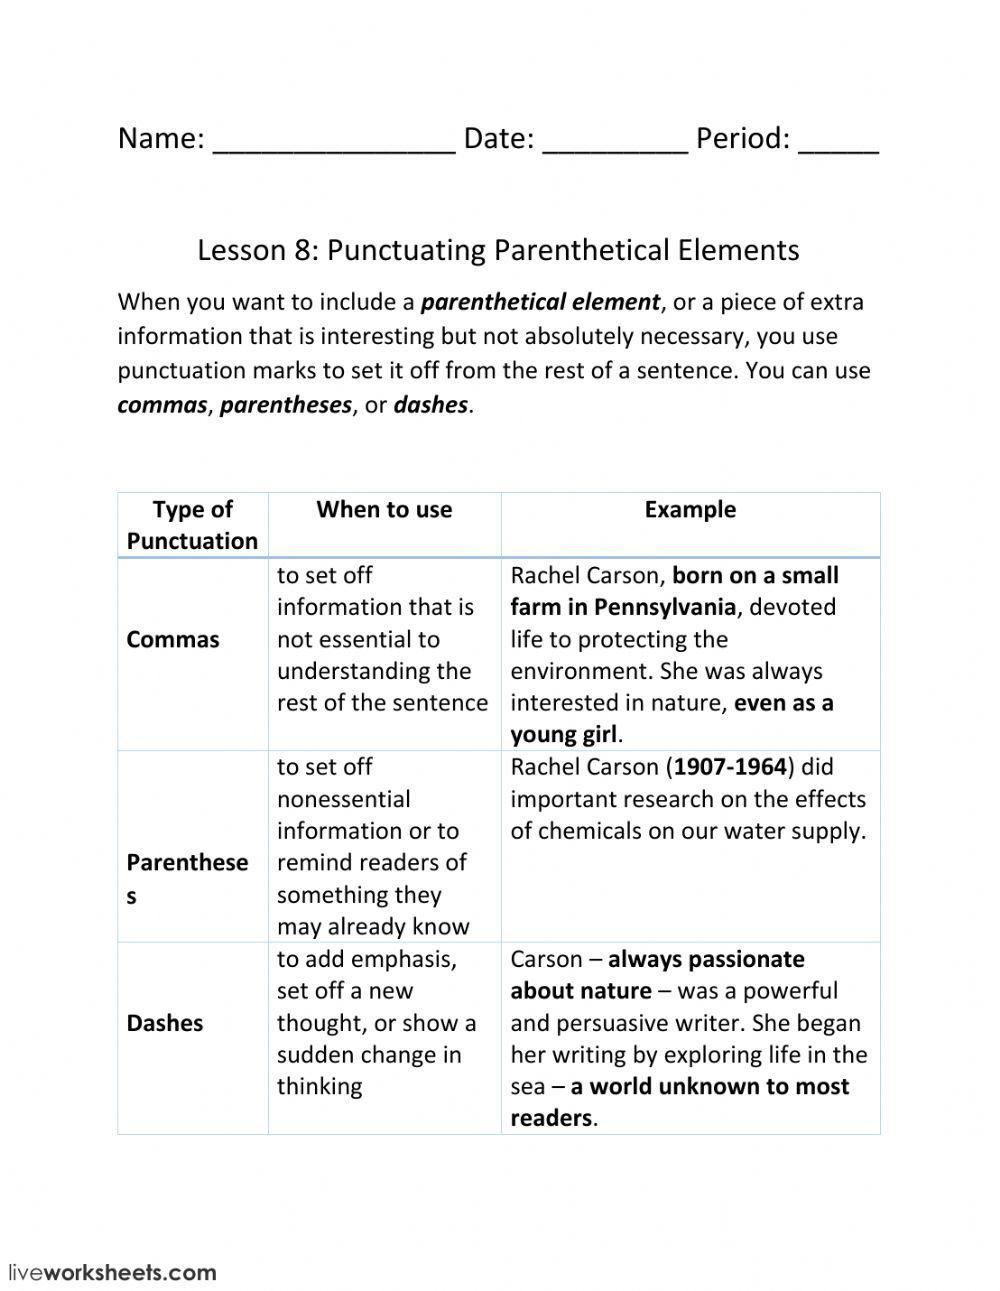 Lesson 8: Punctuating Parenthetical Elements